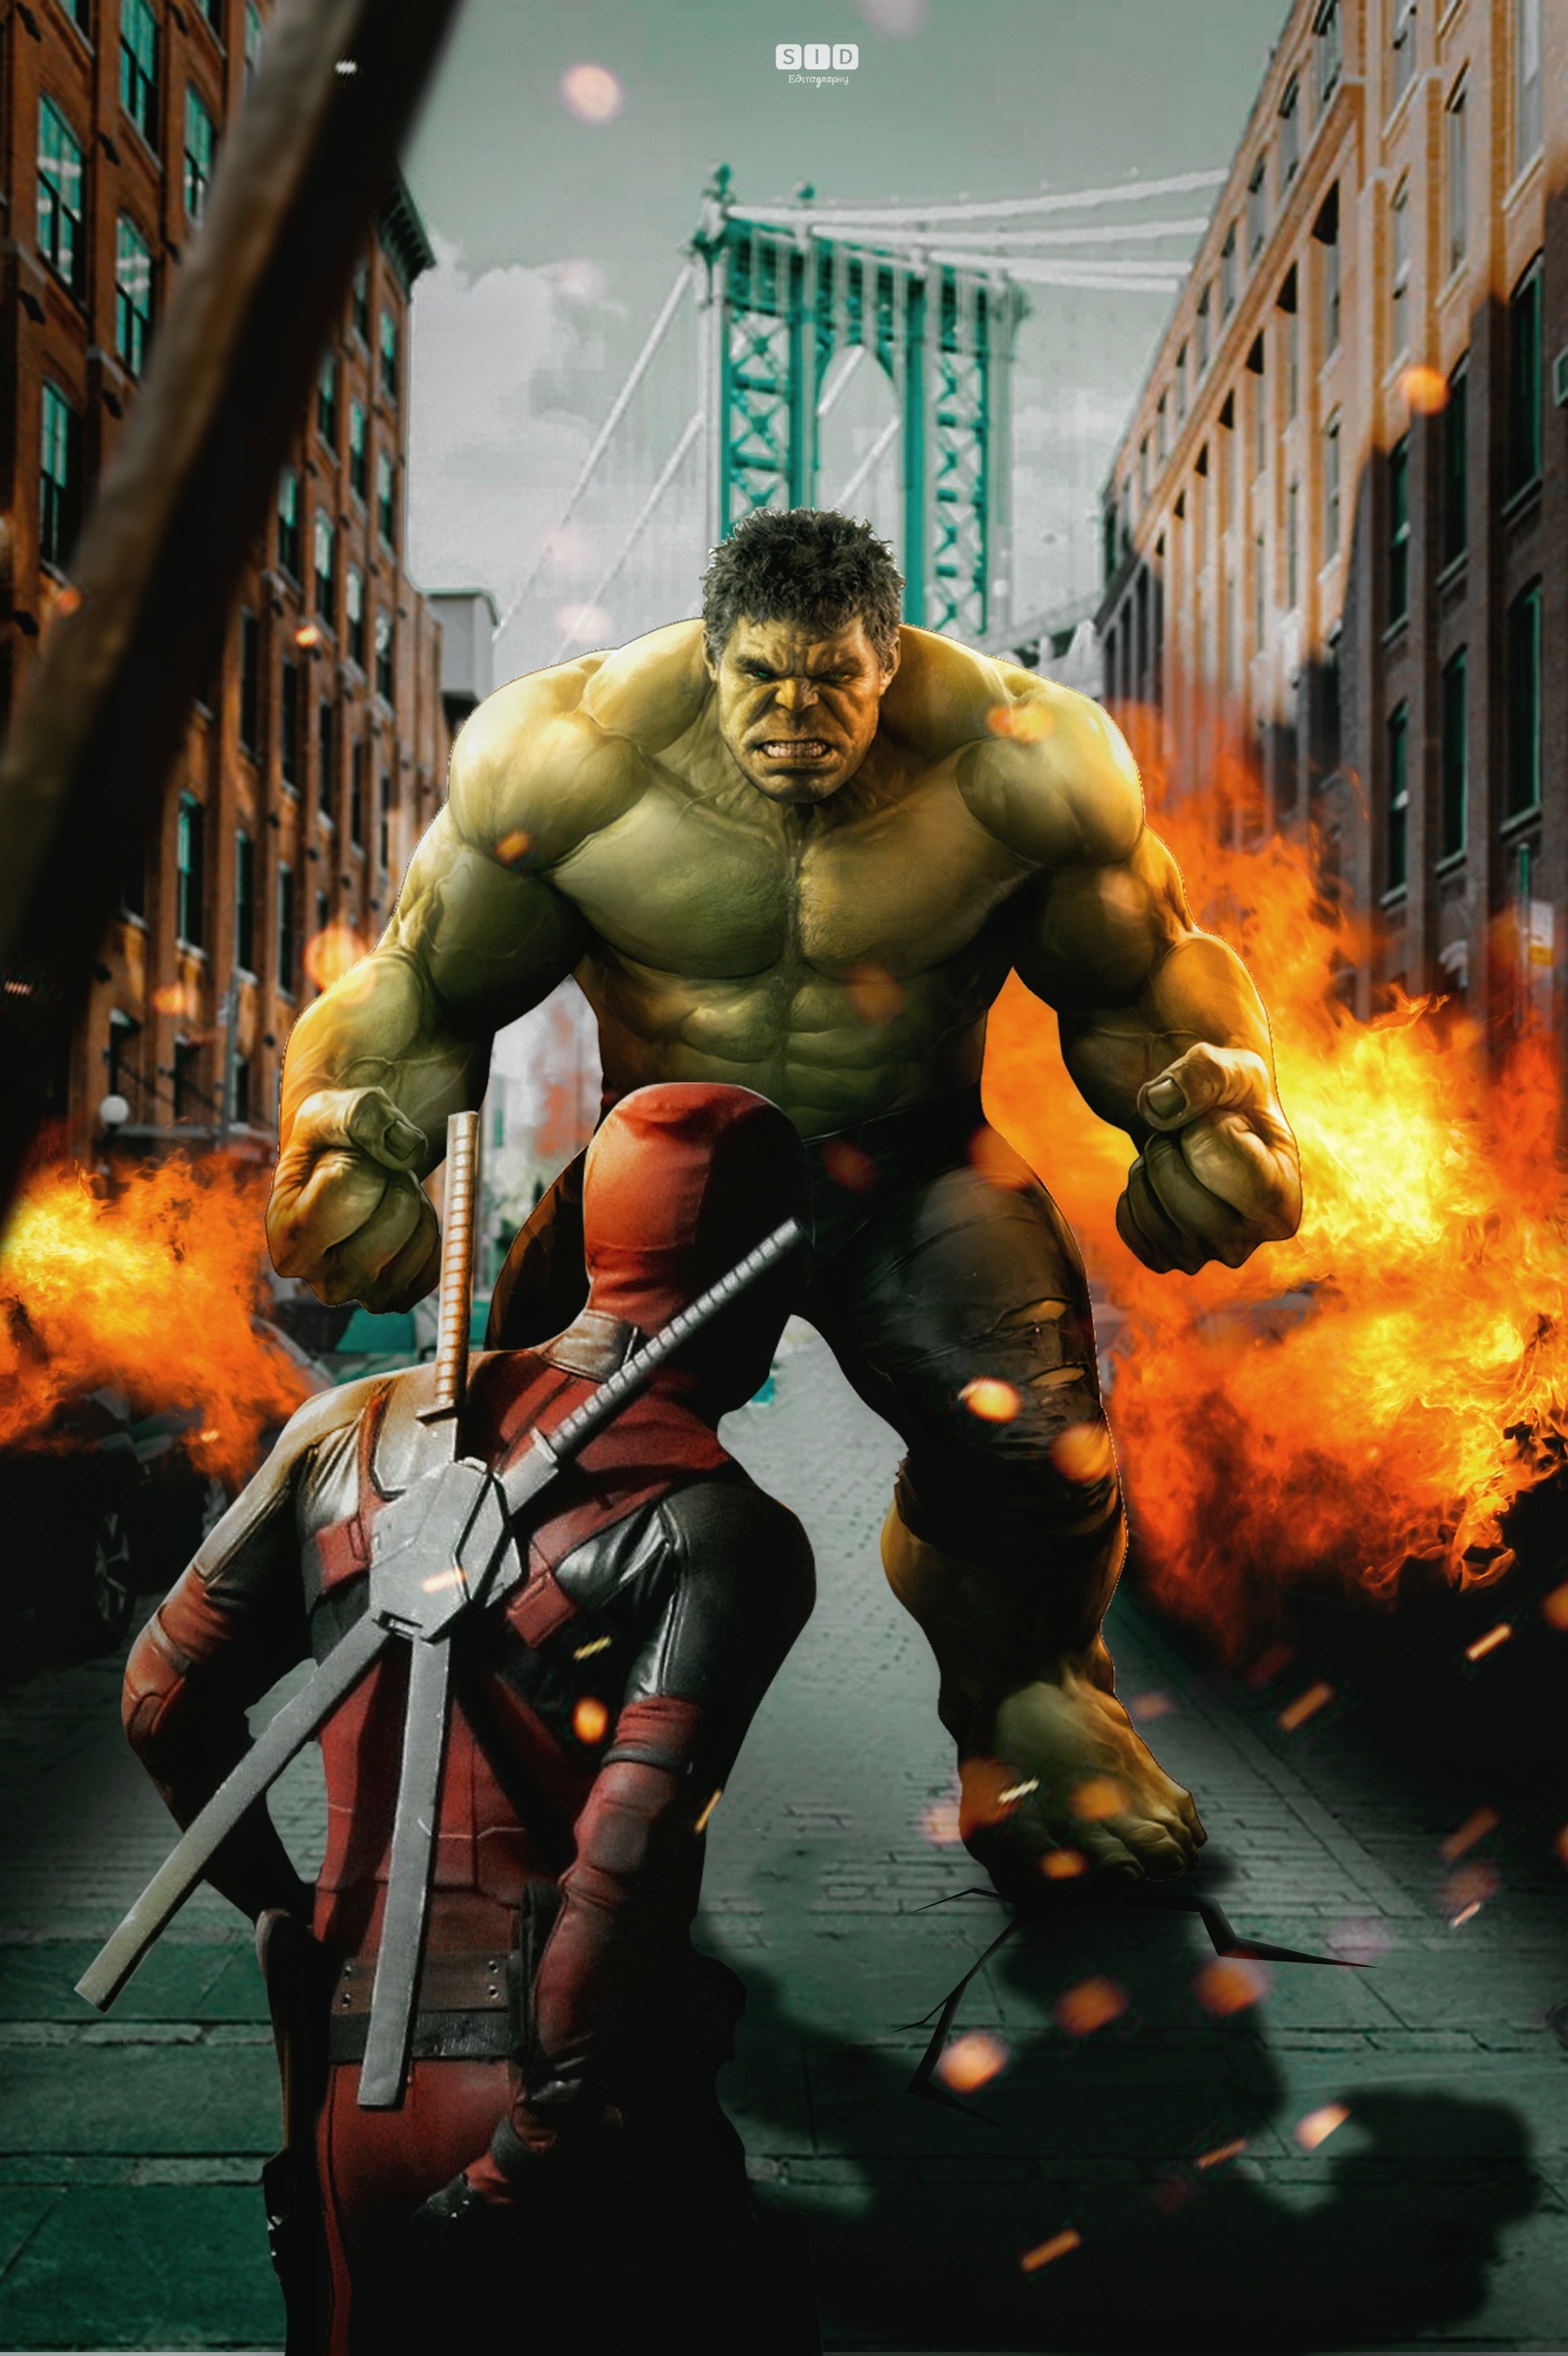 ArtStation - Deadpool vs hulk